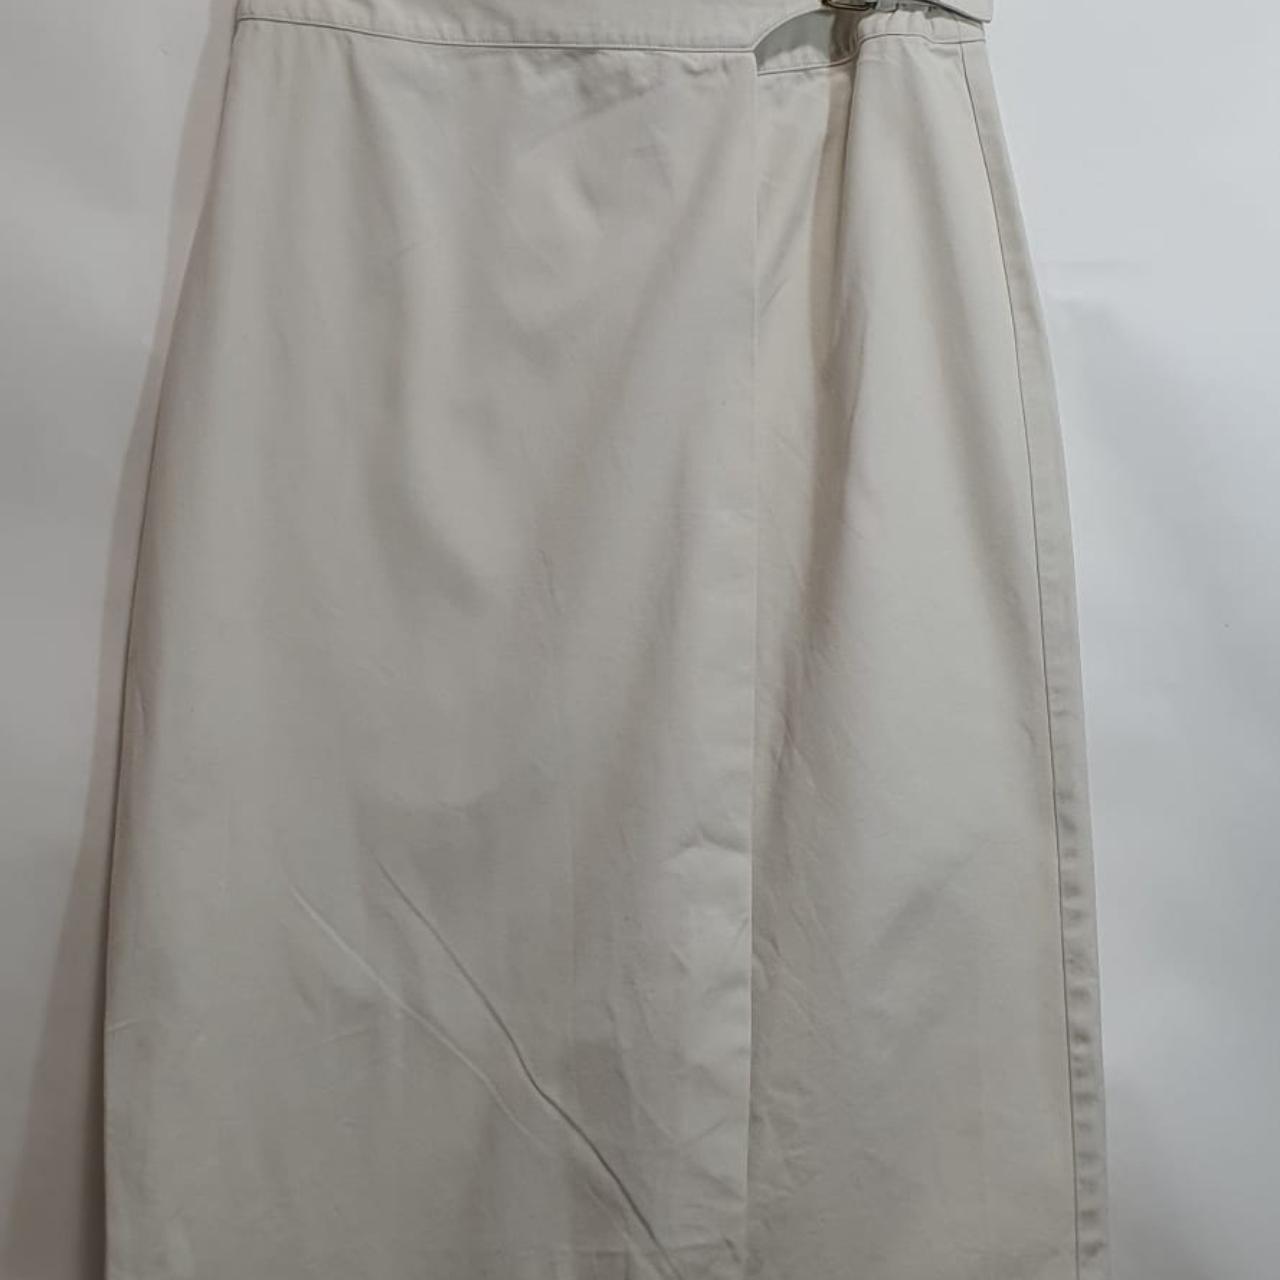 Talbots Women's White Skirt